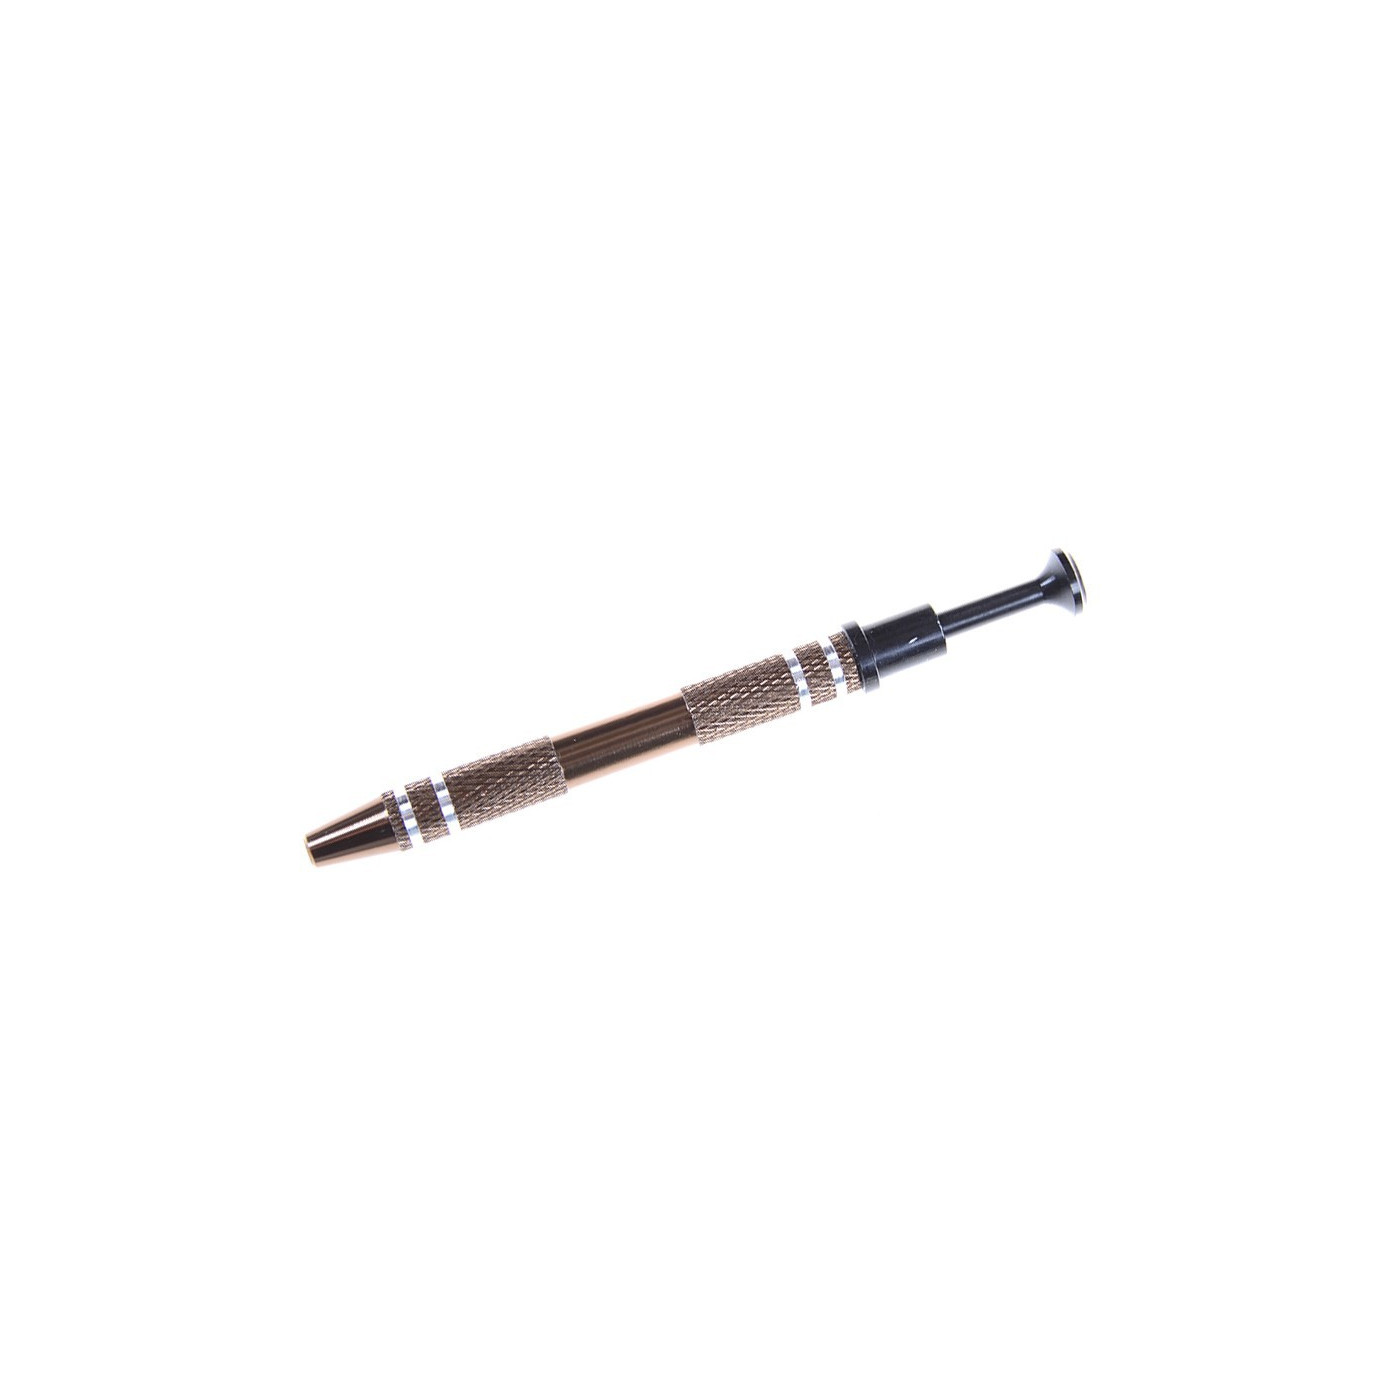 Mini grabber in pen form, 12 cm